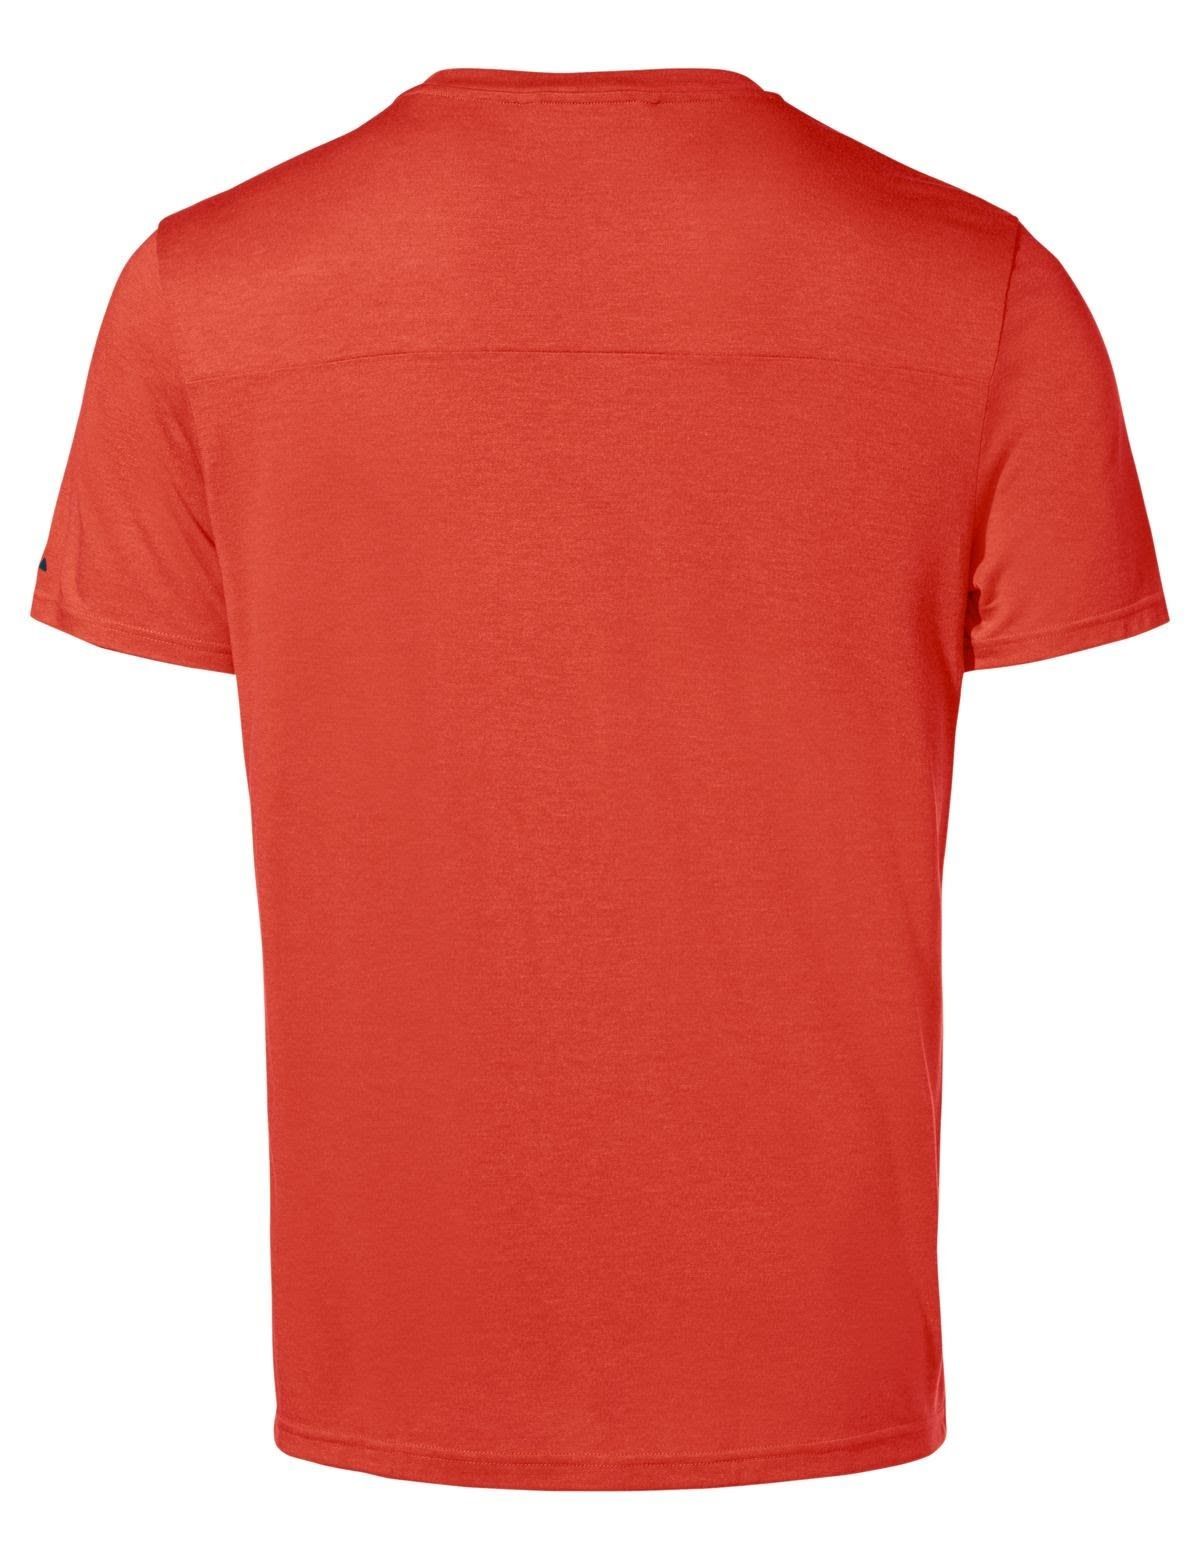 Glowing Iii T-shirt Red T-Shirt Mens Herren Tekoa Kurzarm-Shirt VAUDE Vaude